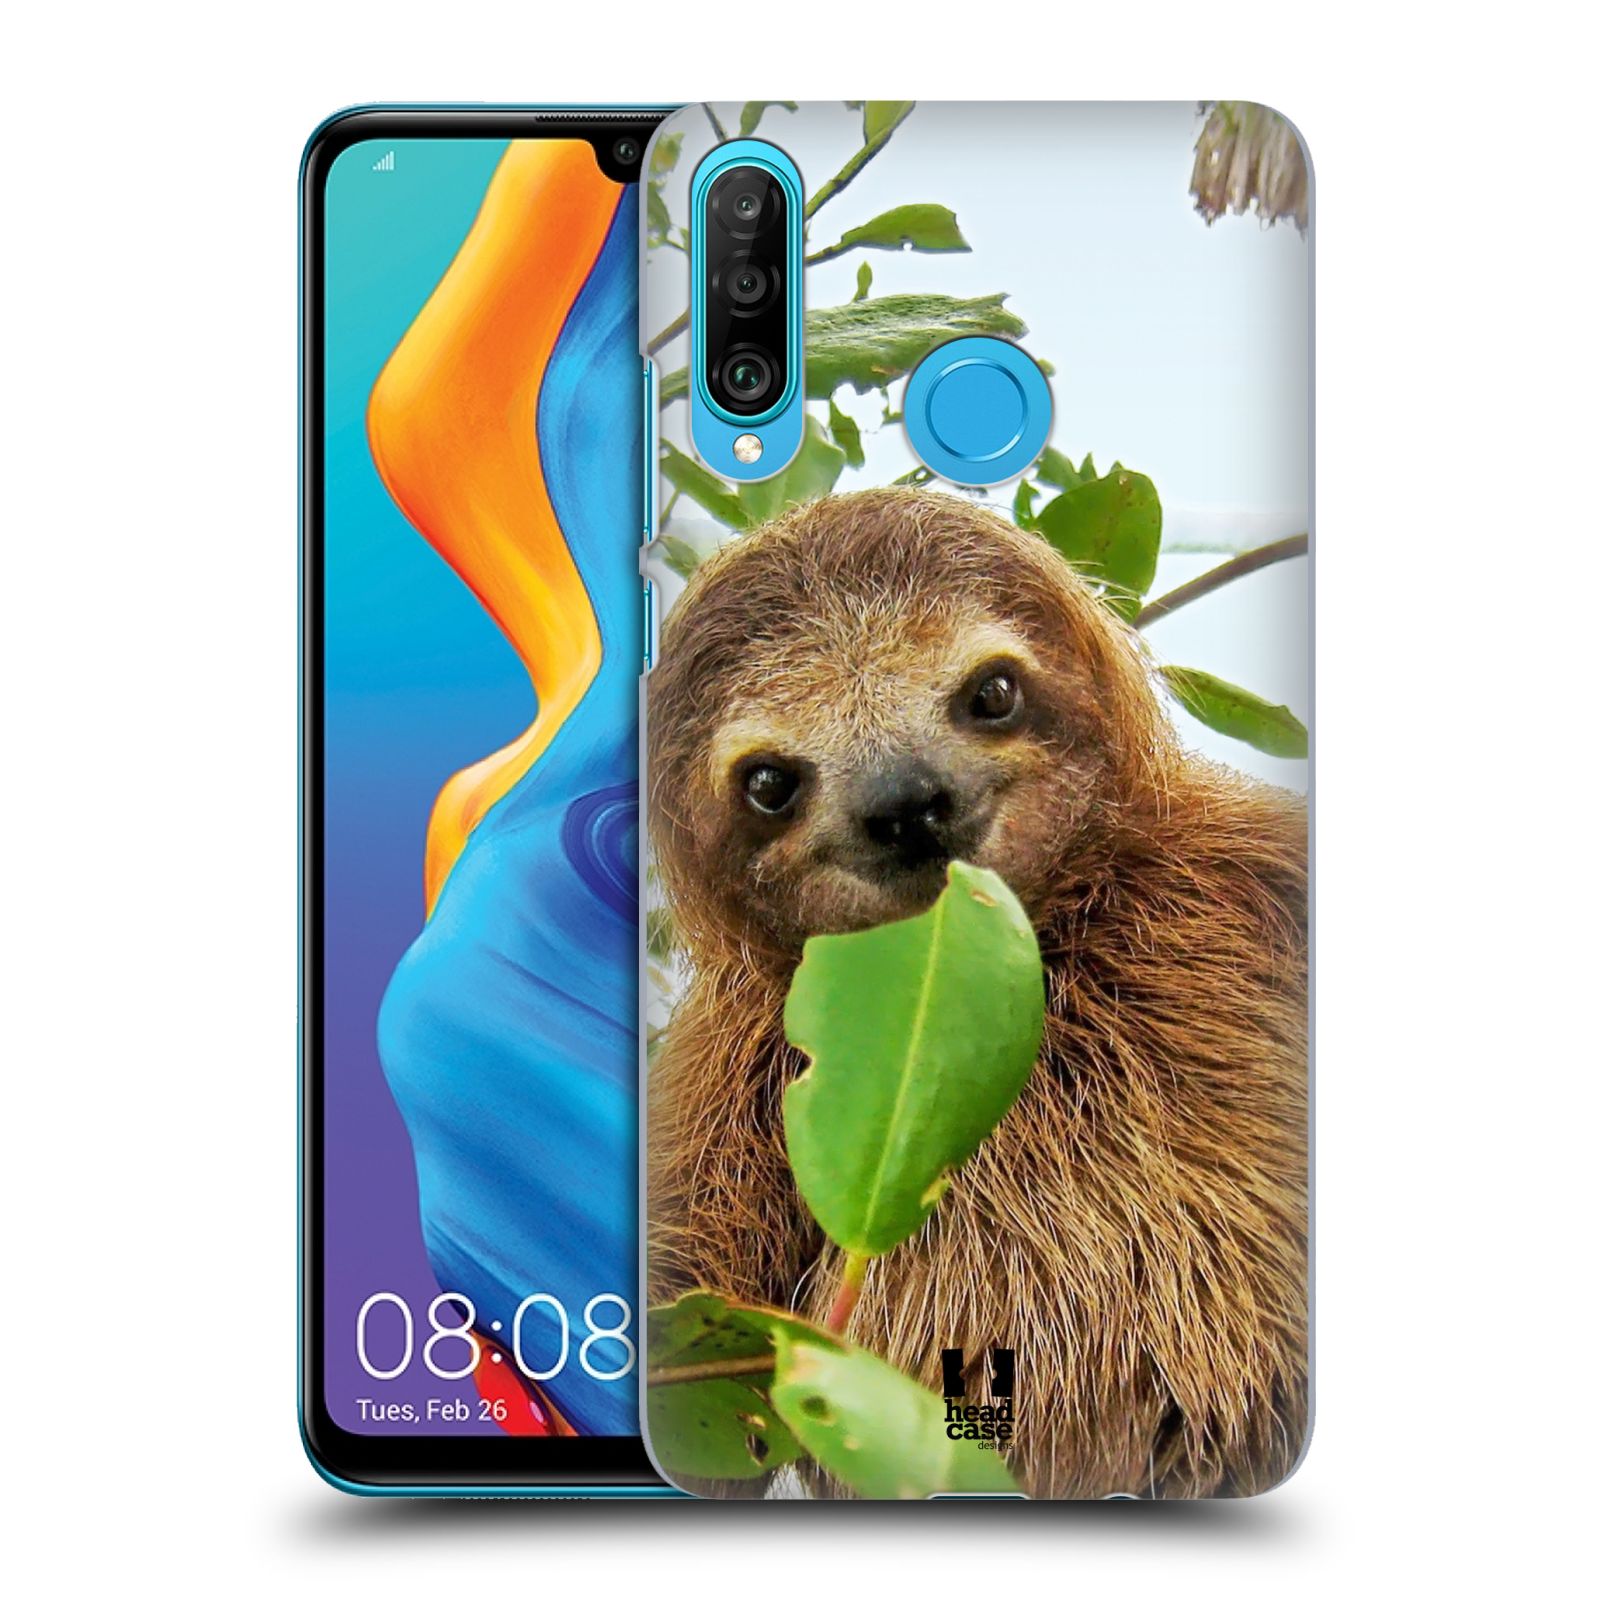 Pouzdro na mobil Huawei P30 LITE - HEAD CASE - vzor slavná zvířata foto lenochod